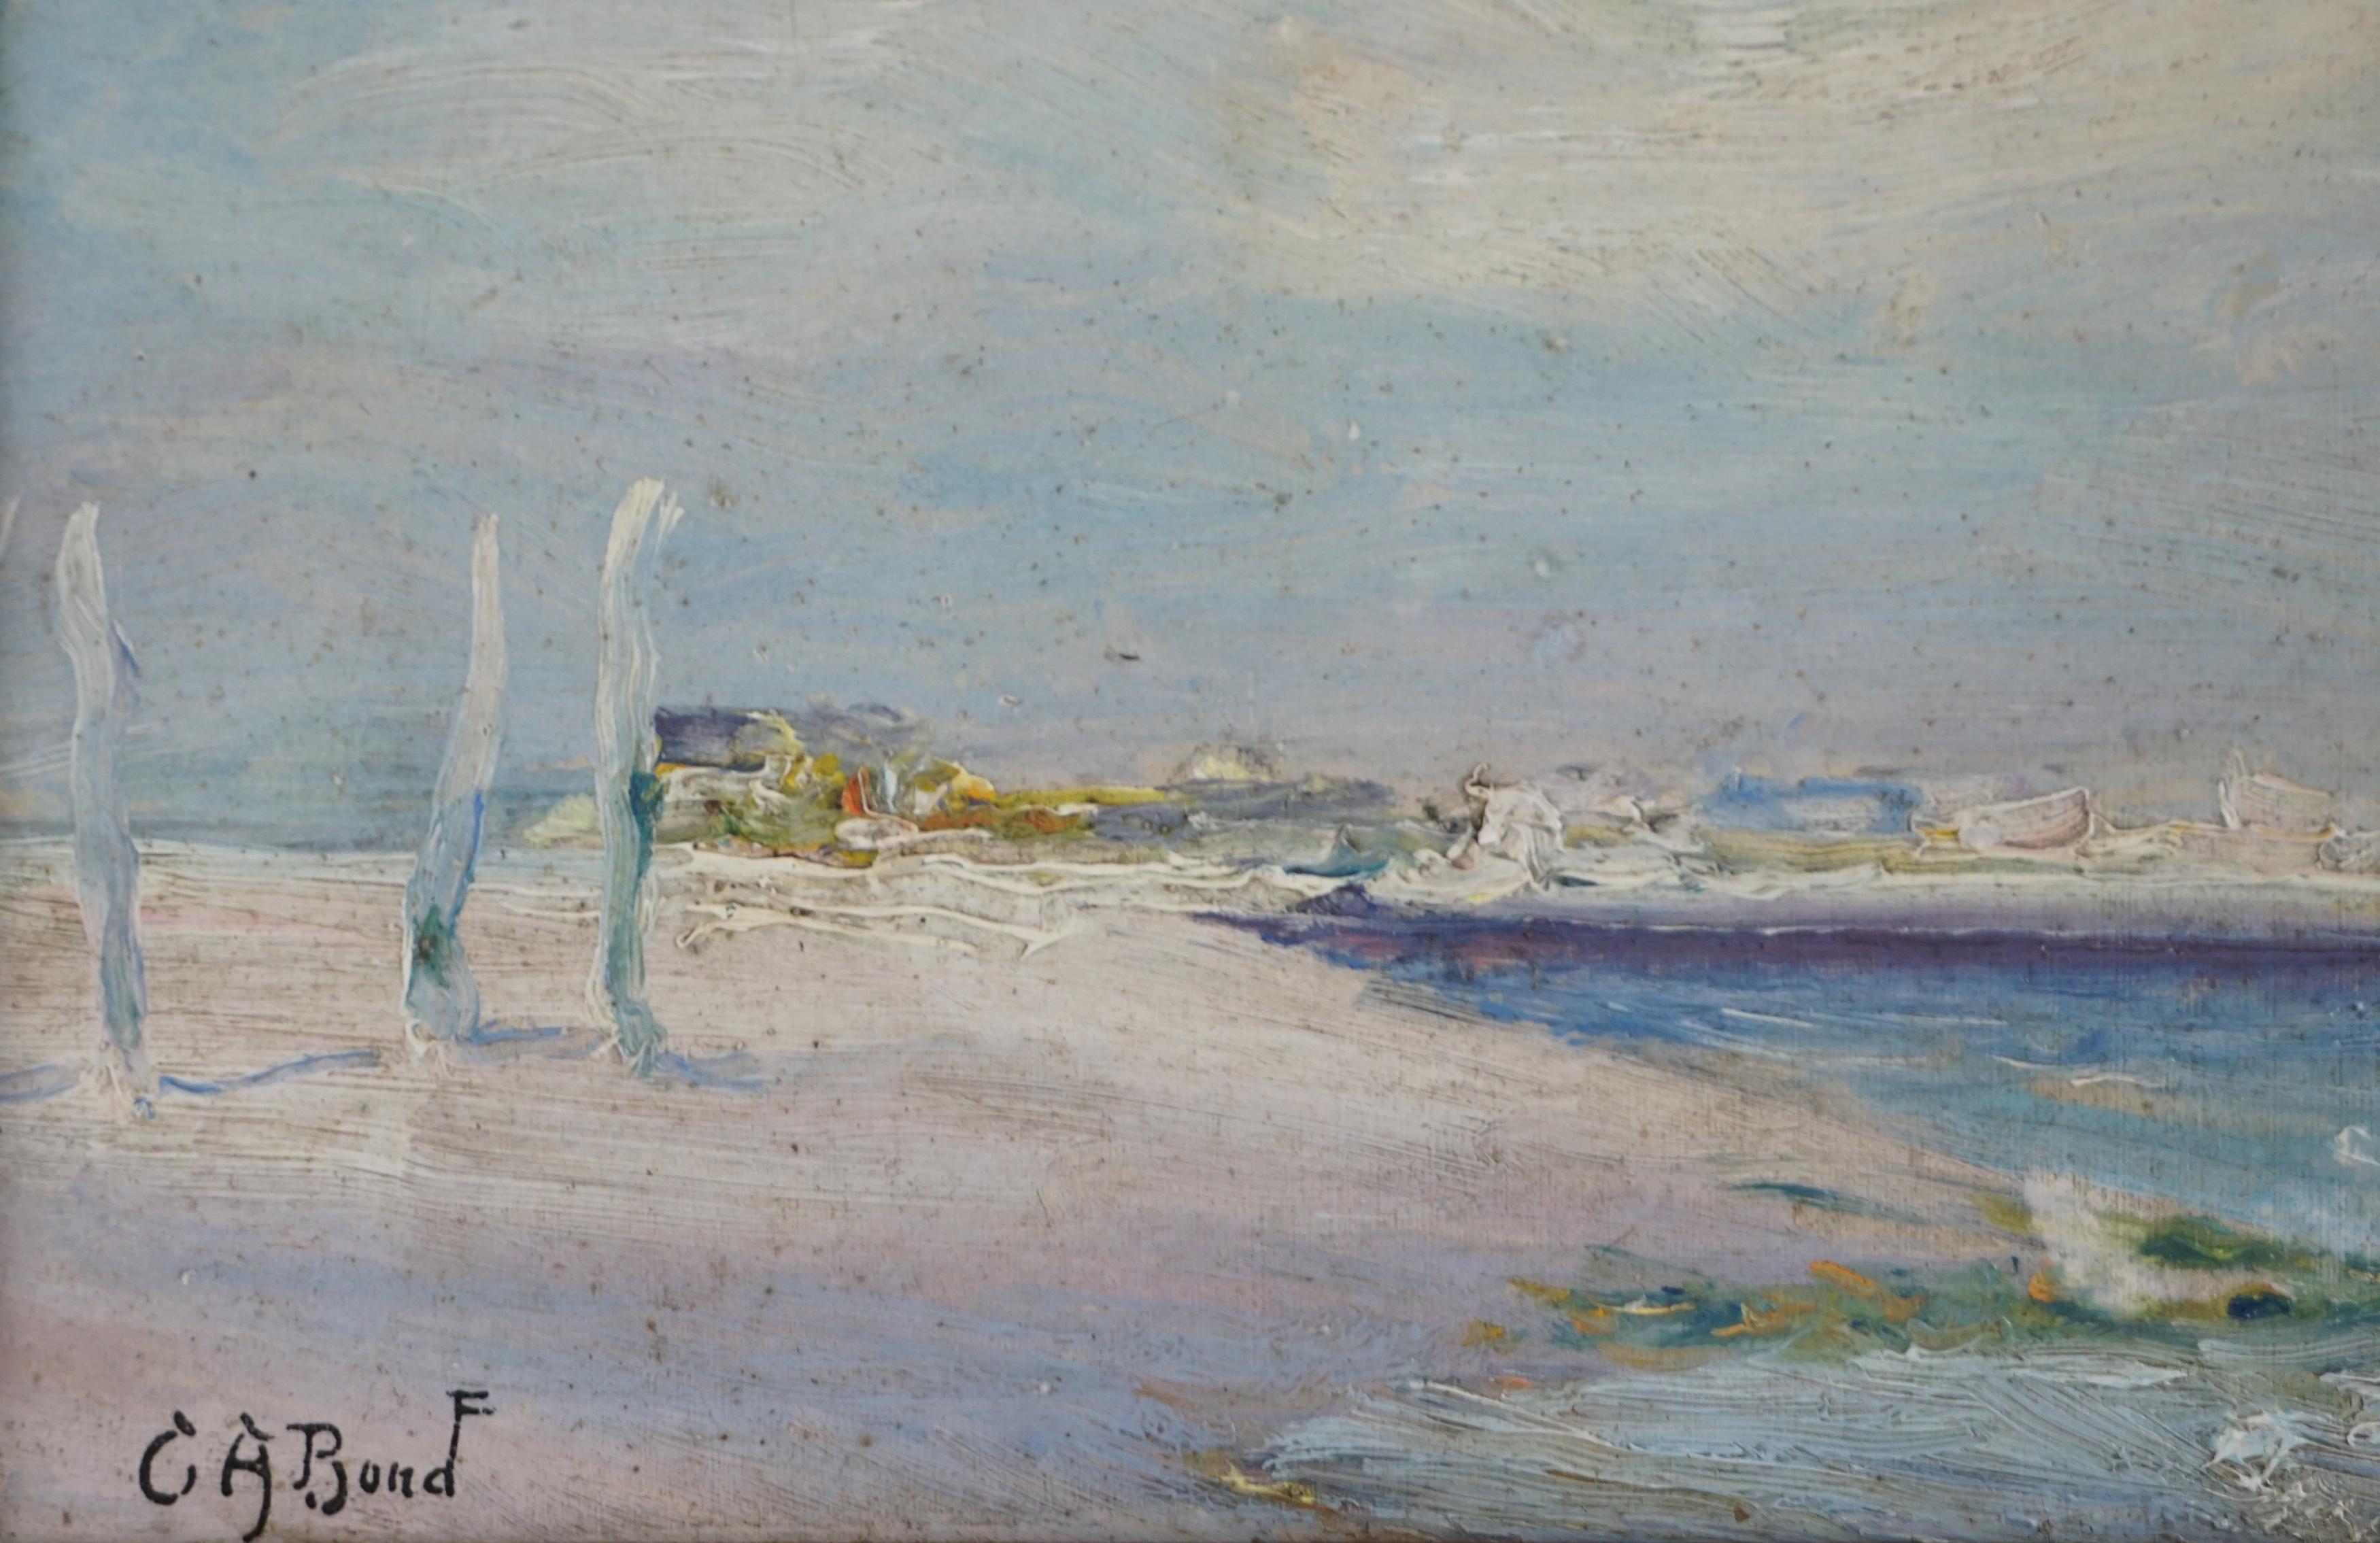 Charmante peinture impressionniste sur le thème allégorique d'un cheval pâle arrivant sur le rivage par Cash Arthur Bond (Américain, 1876 - 1952), vers 1900. Signé 